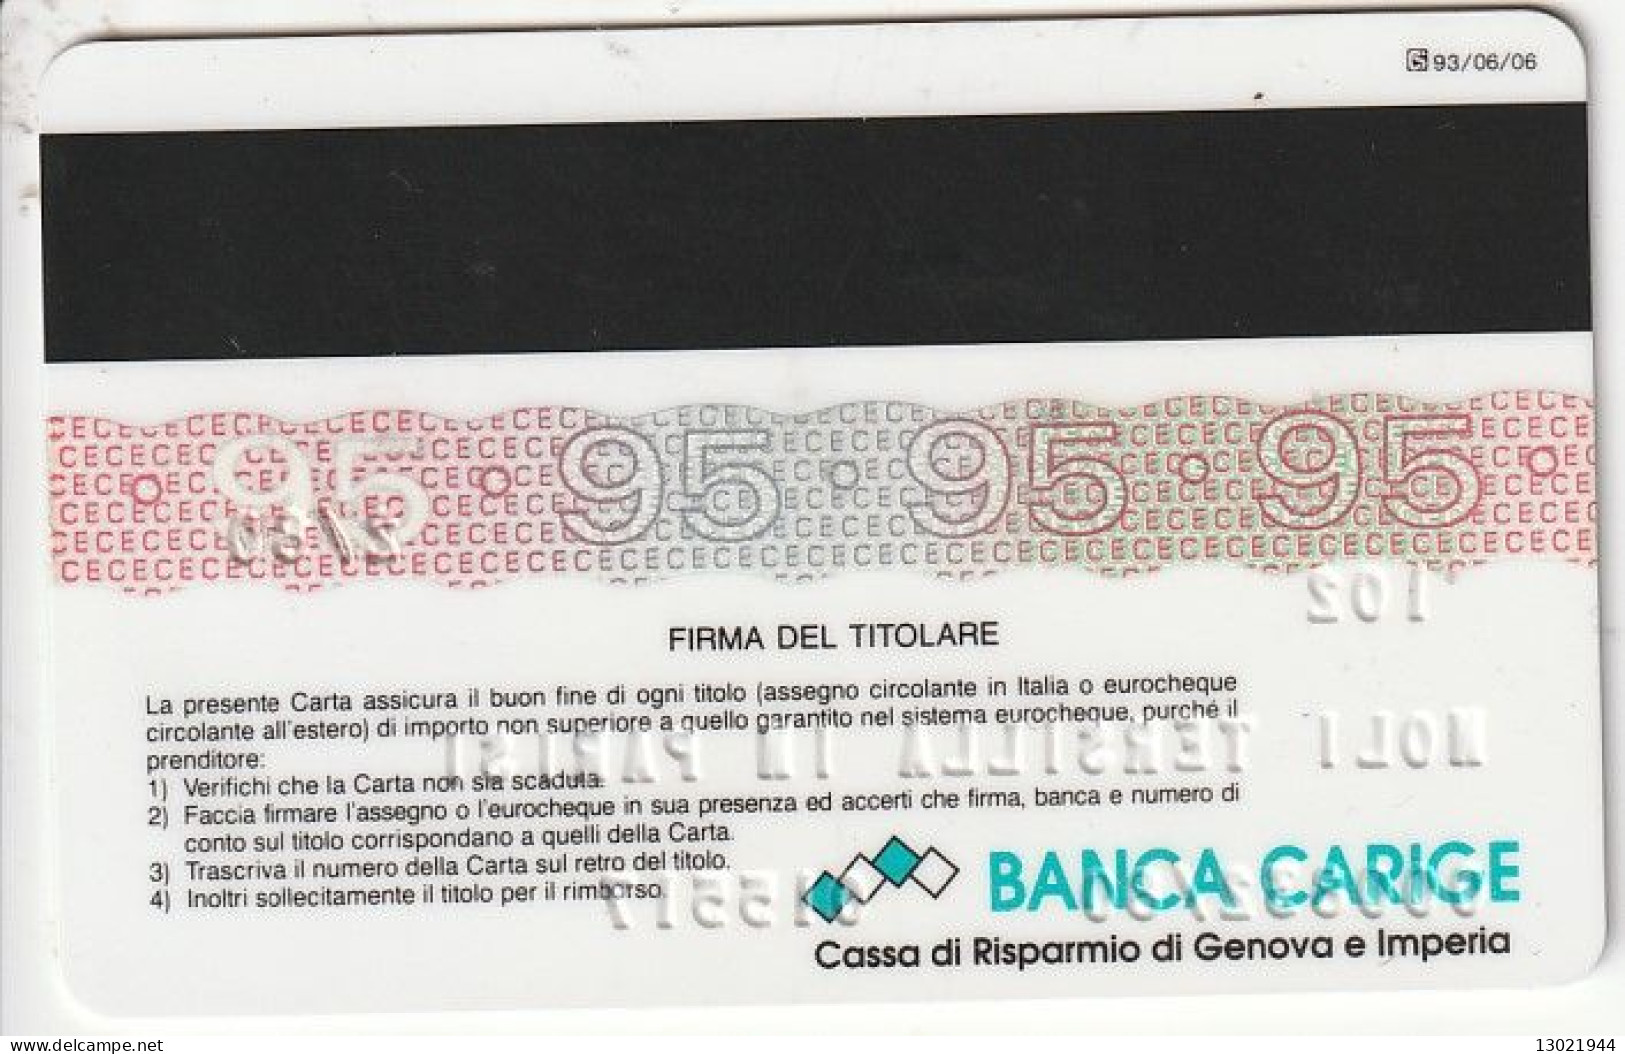 ITALIA   BANCA CARIGE EC 1995 (93/06/06) CASSA DI RISPARMIO DI GENOVA E IMPERIA - Tarjetas De Crédito (caducidad Min 10 Años)